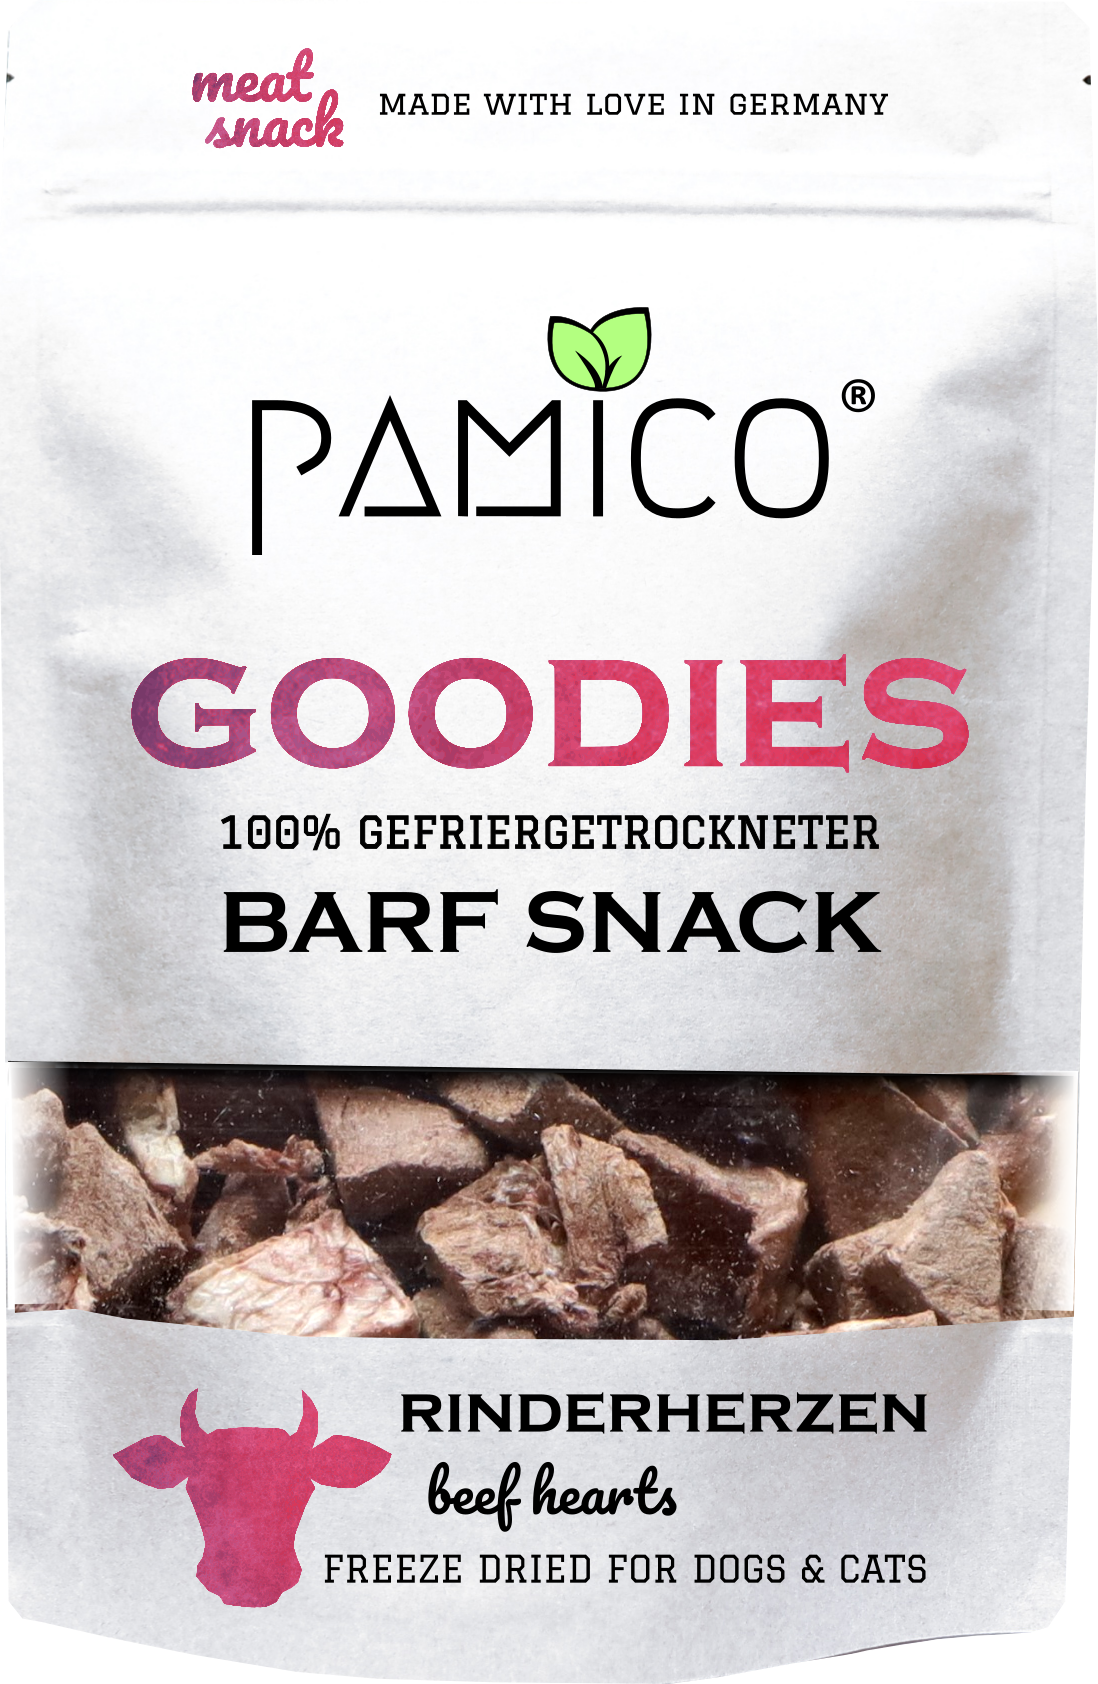 Rinderherzen gefriergetrocknet - BARF Snack Goodies for dogs & cats